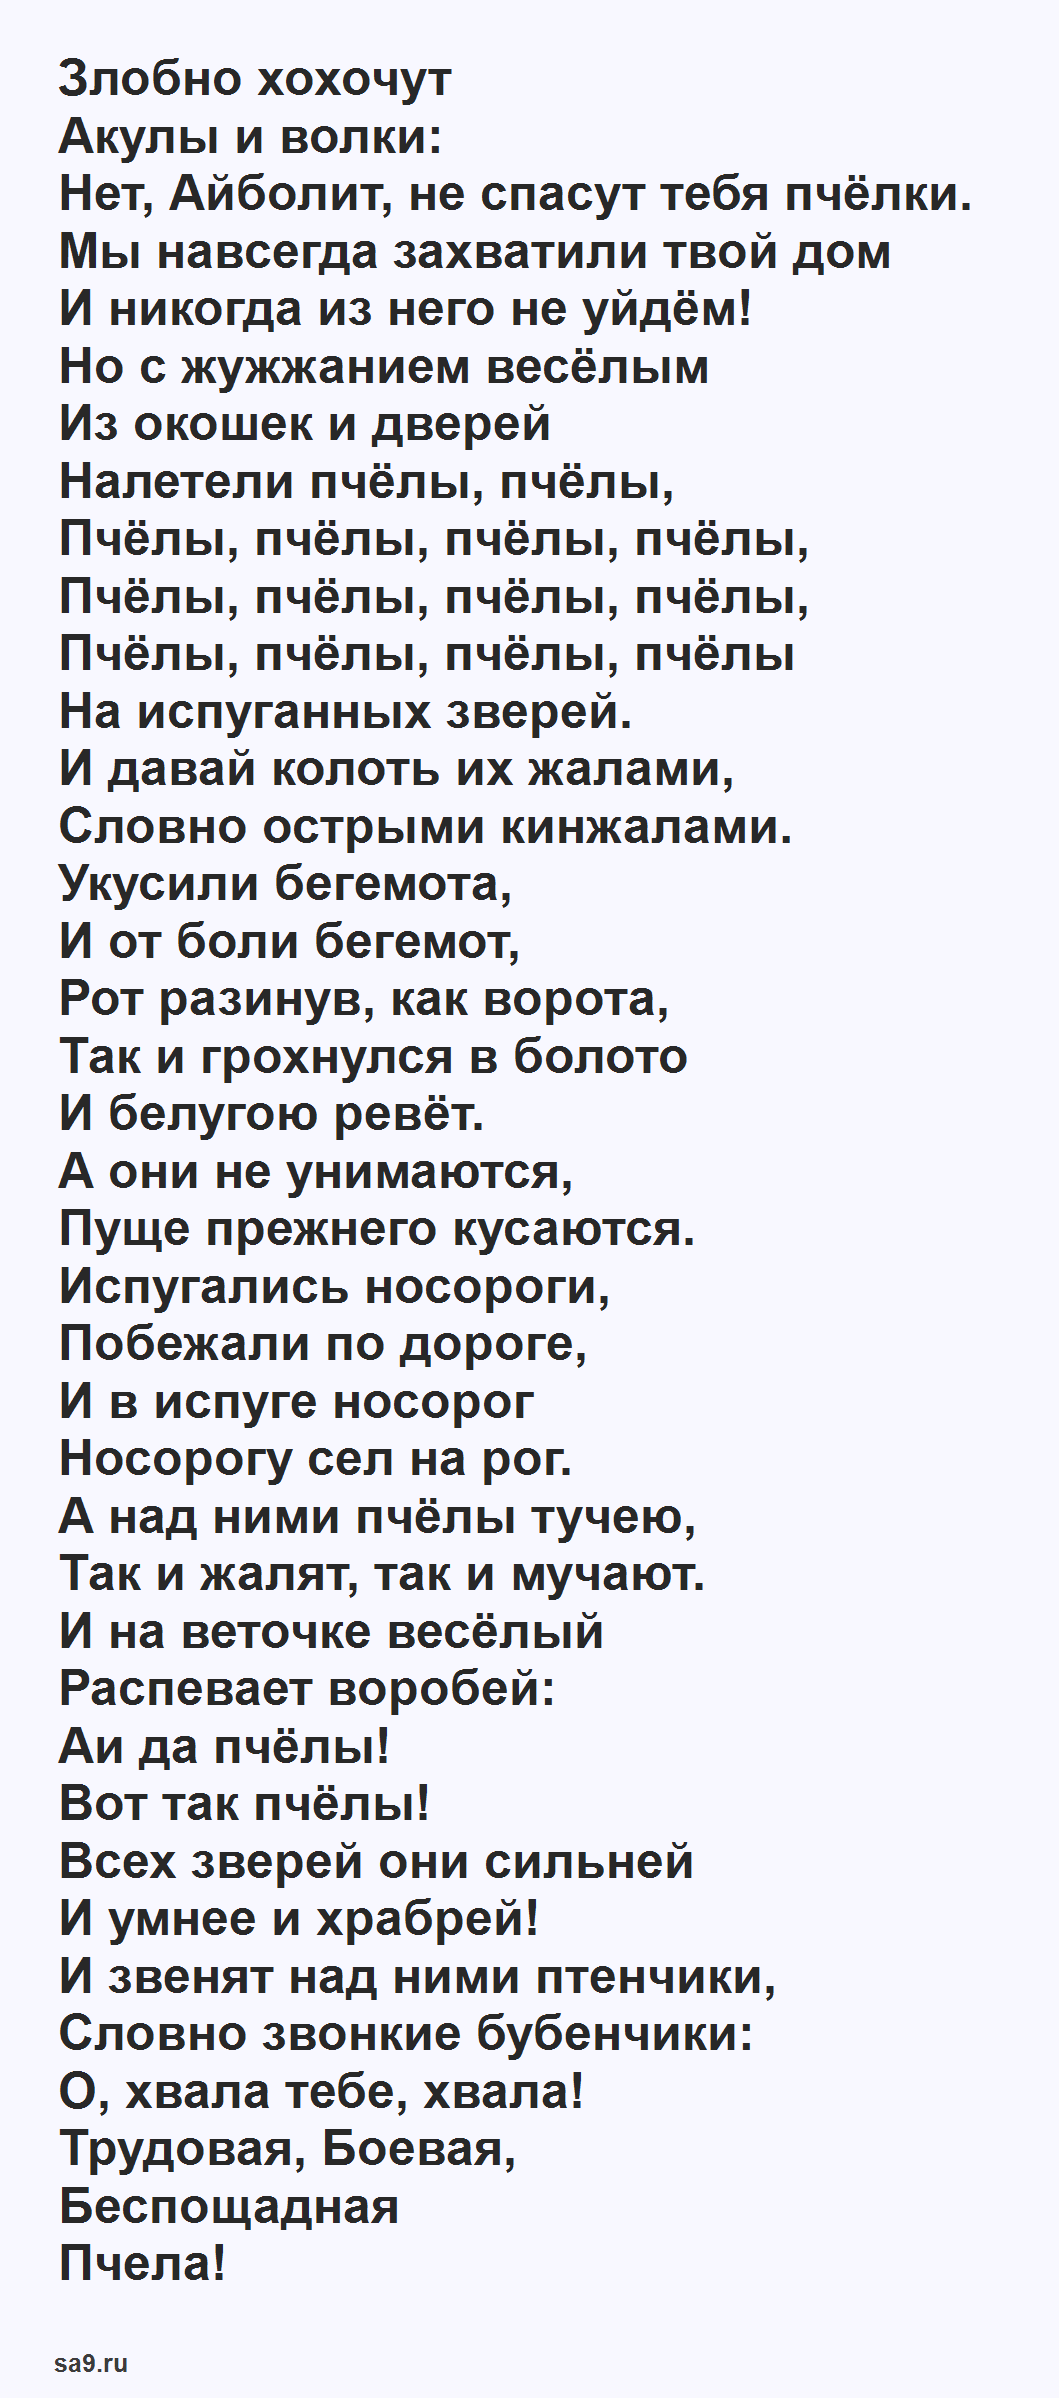 'Одолеем Бармалея' сказка Чуковского, полностью